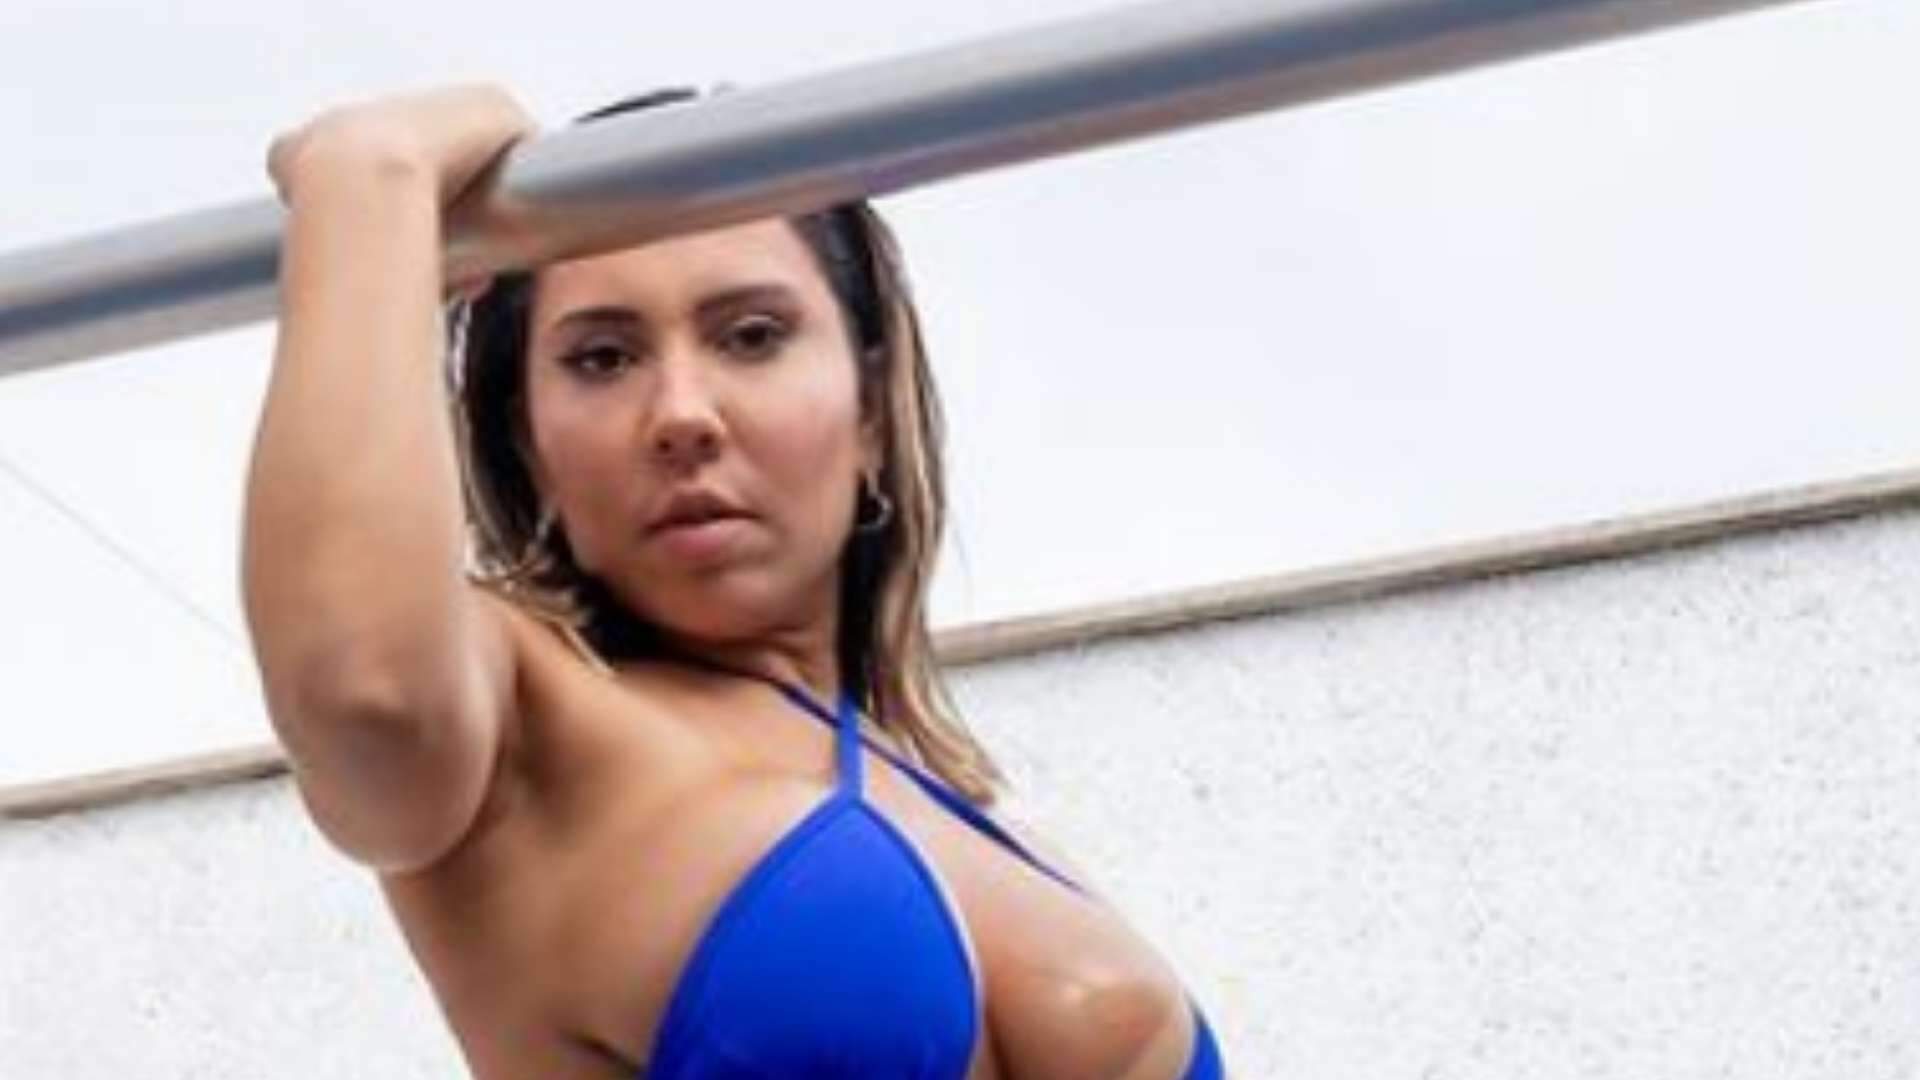 Mulher Melão faz faxina em sua casa com pose e roupas polêmicas: “Só limpando” - Metropolitana FM